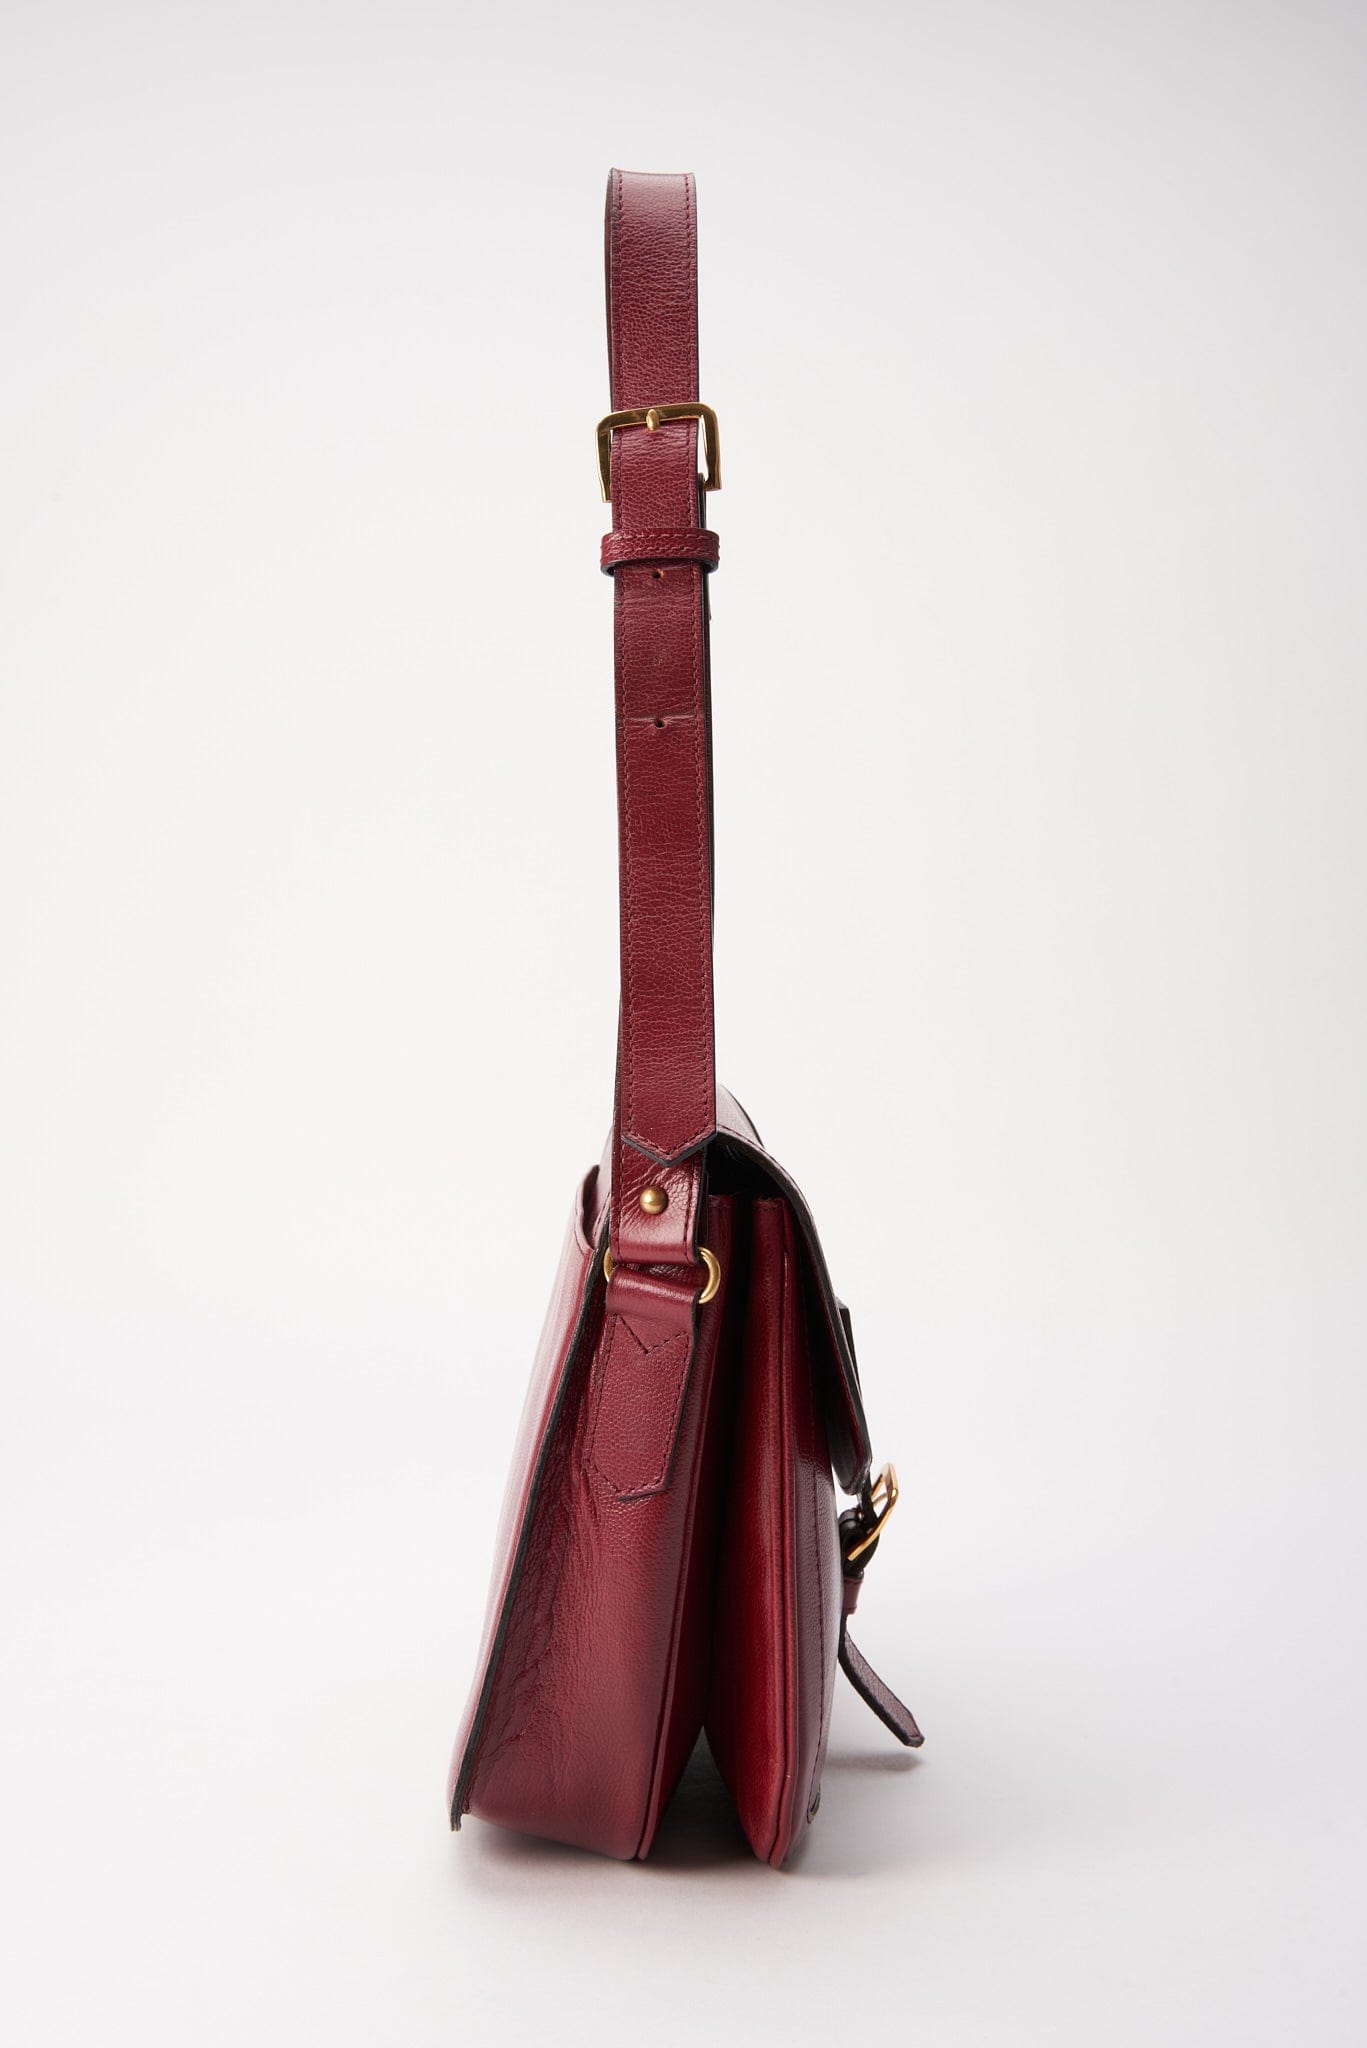 Vintage Red Leather YSL Leather Satchel Handbag